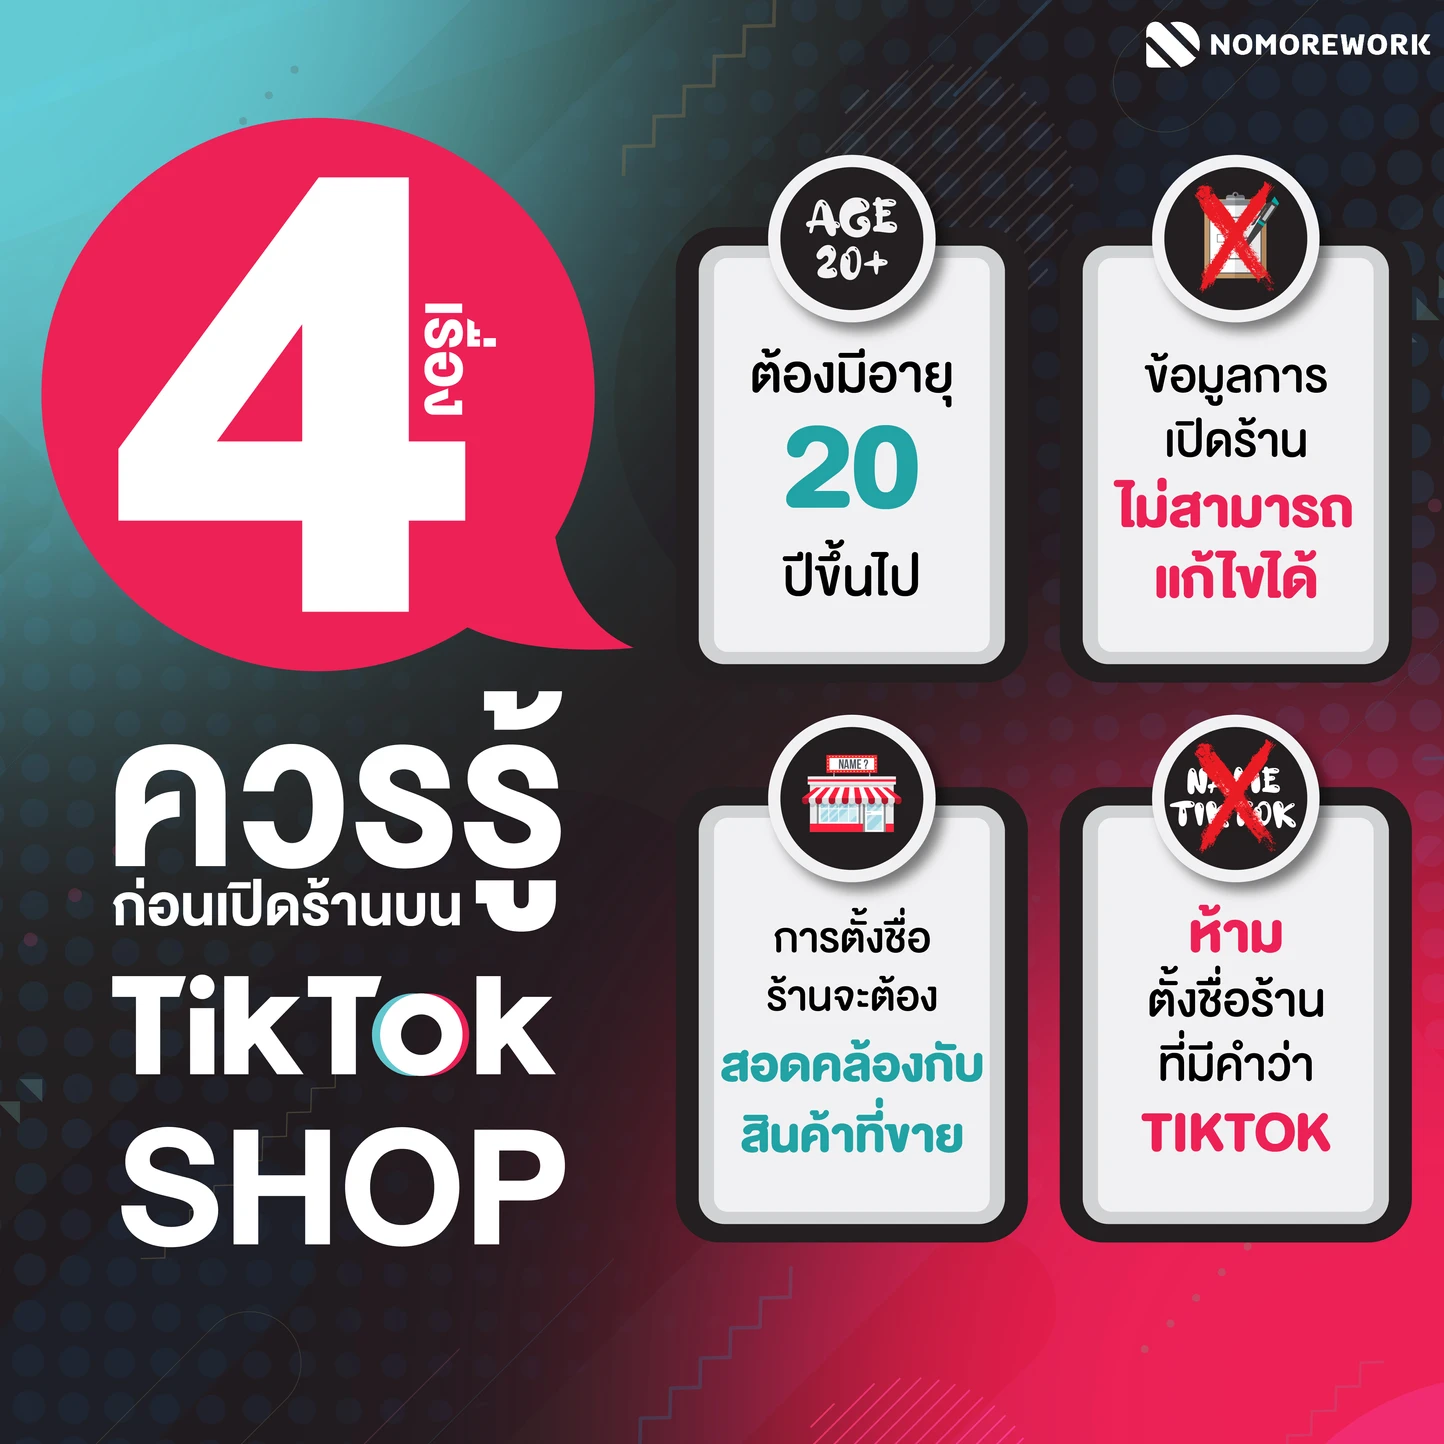 4 เรื่อง ควรรู้! ก่อนเปิดร้านบน Tiktok Shop l No More Work